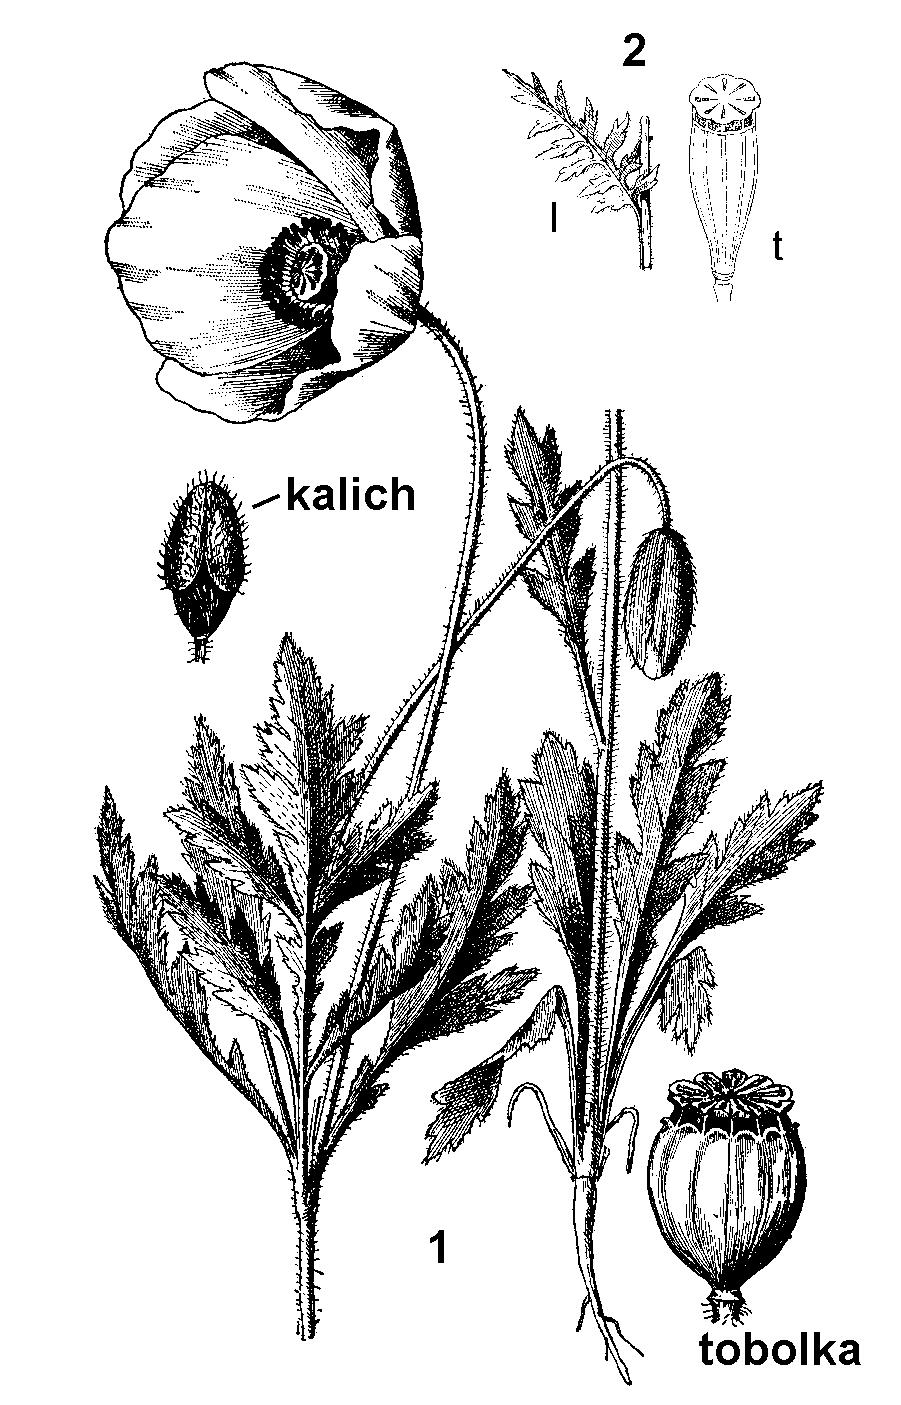 Mak (Papaver) sa vyznačuje lúčovitou (tanierovitou) bliznou sediacou priamo na semenníku (bez čnelky) a charakteristickými tobolkami - makovicami, na ktorých blizna zostáva.